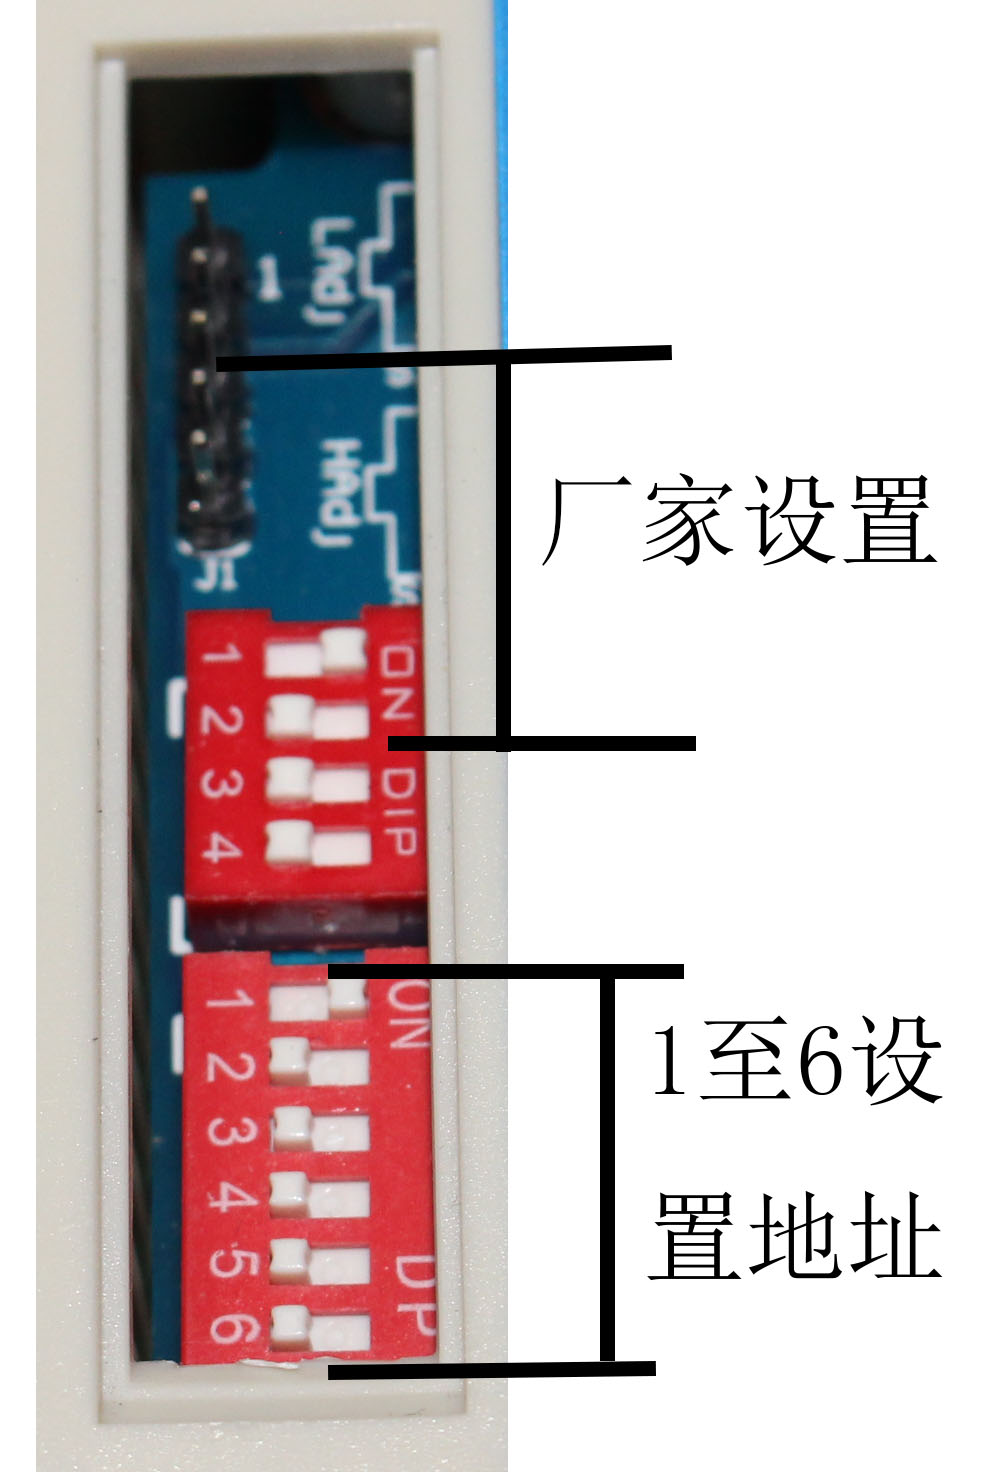 SM1201B-8,RS485,接口,PT100,变送模块